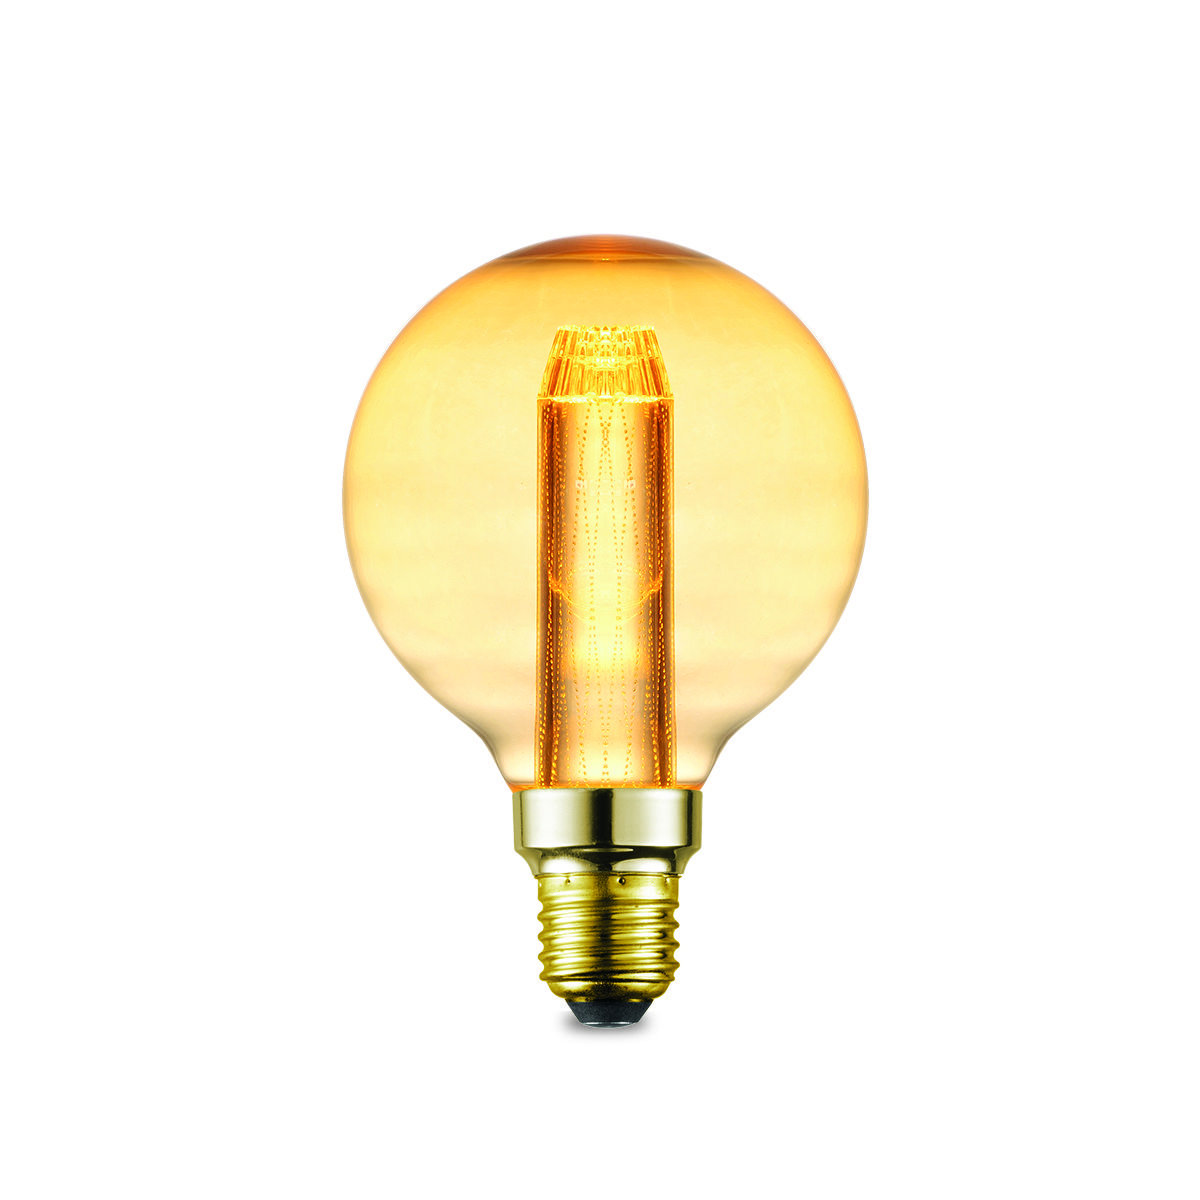 Light depot - LED lamp Deco E27 3W G95 dimbaar - amber - Outlet